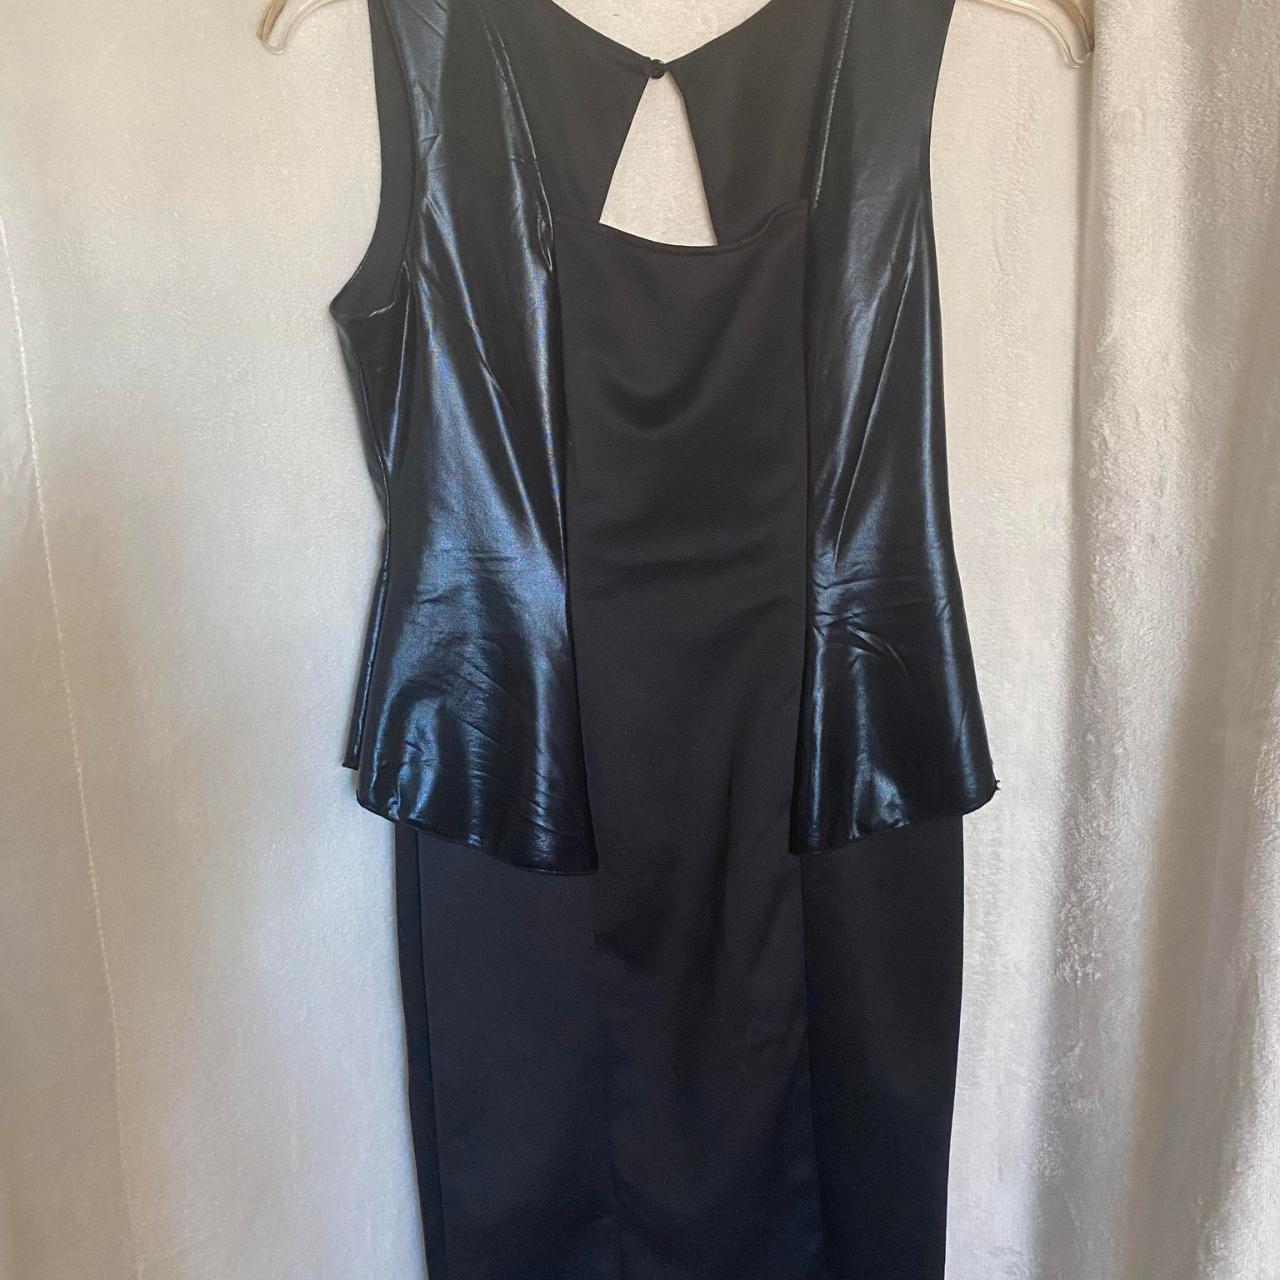 Unbranded Black Peplum Dress Size Large Excellent... - Depop